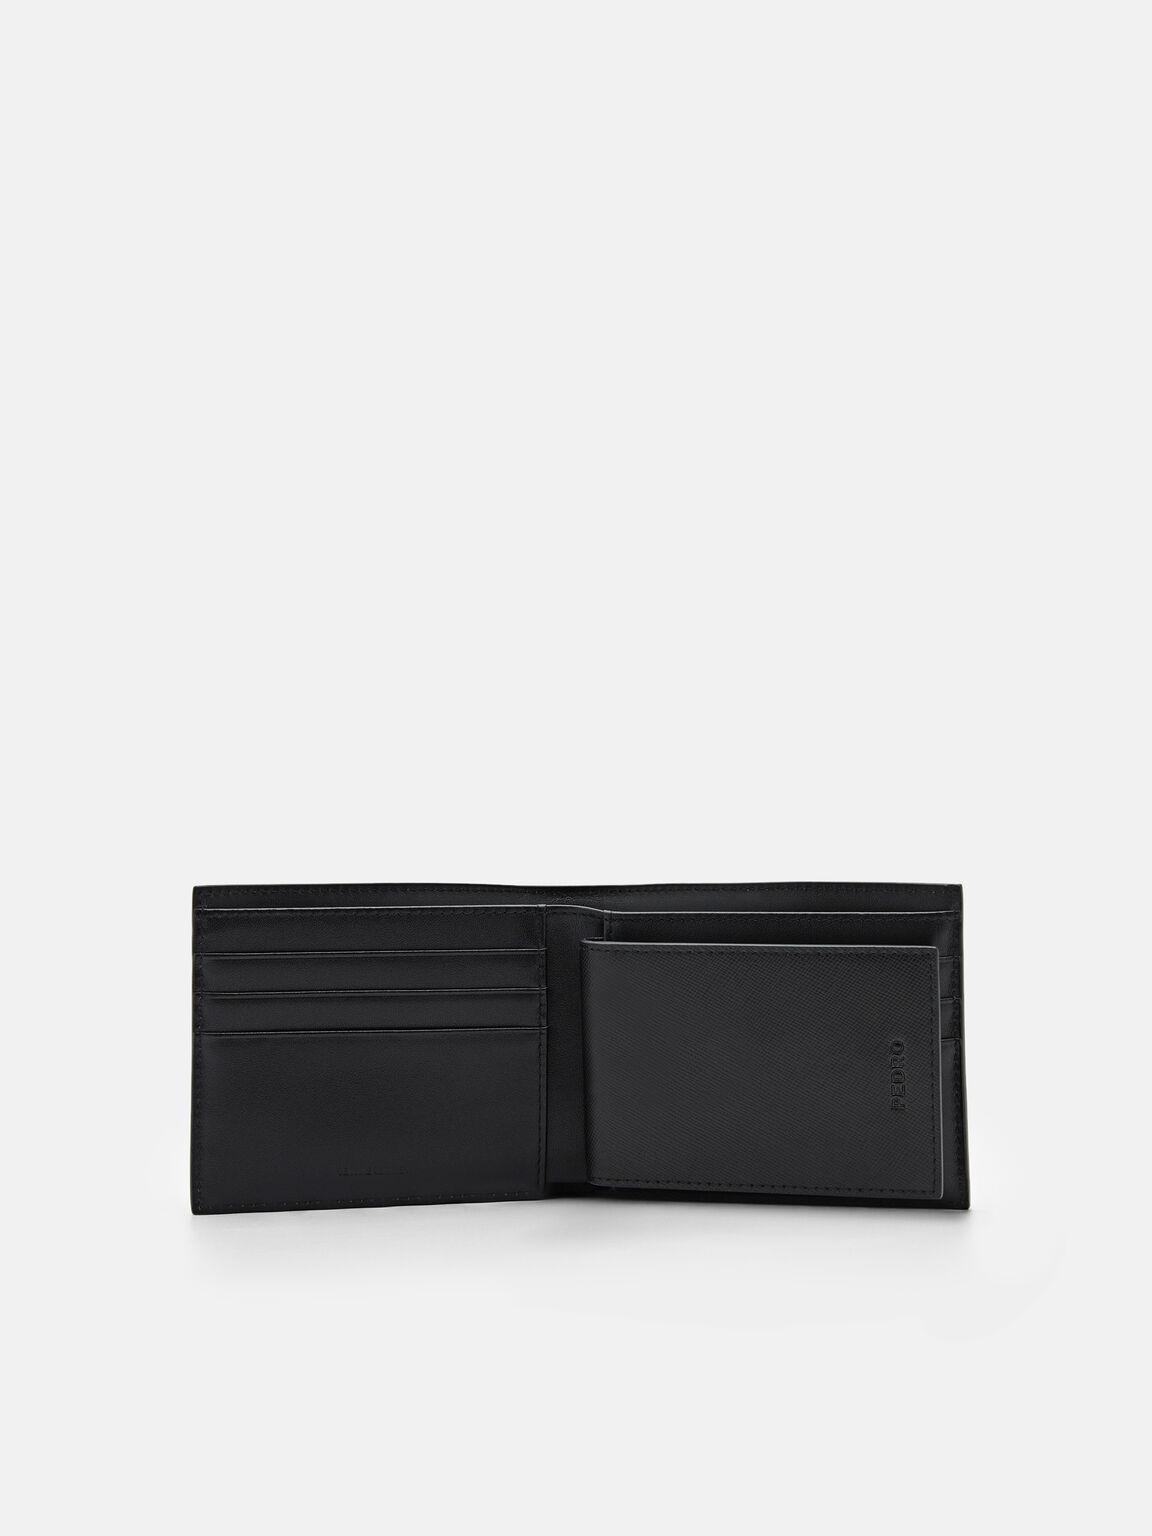 Leather Bi-Fold Insert Wallet, Black, hi-res